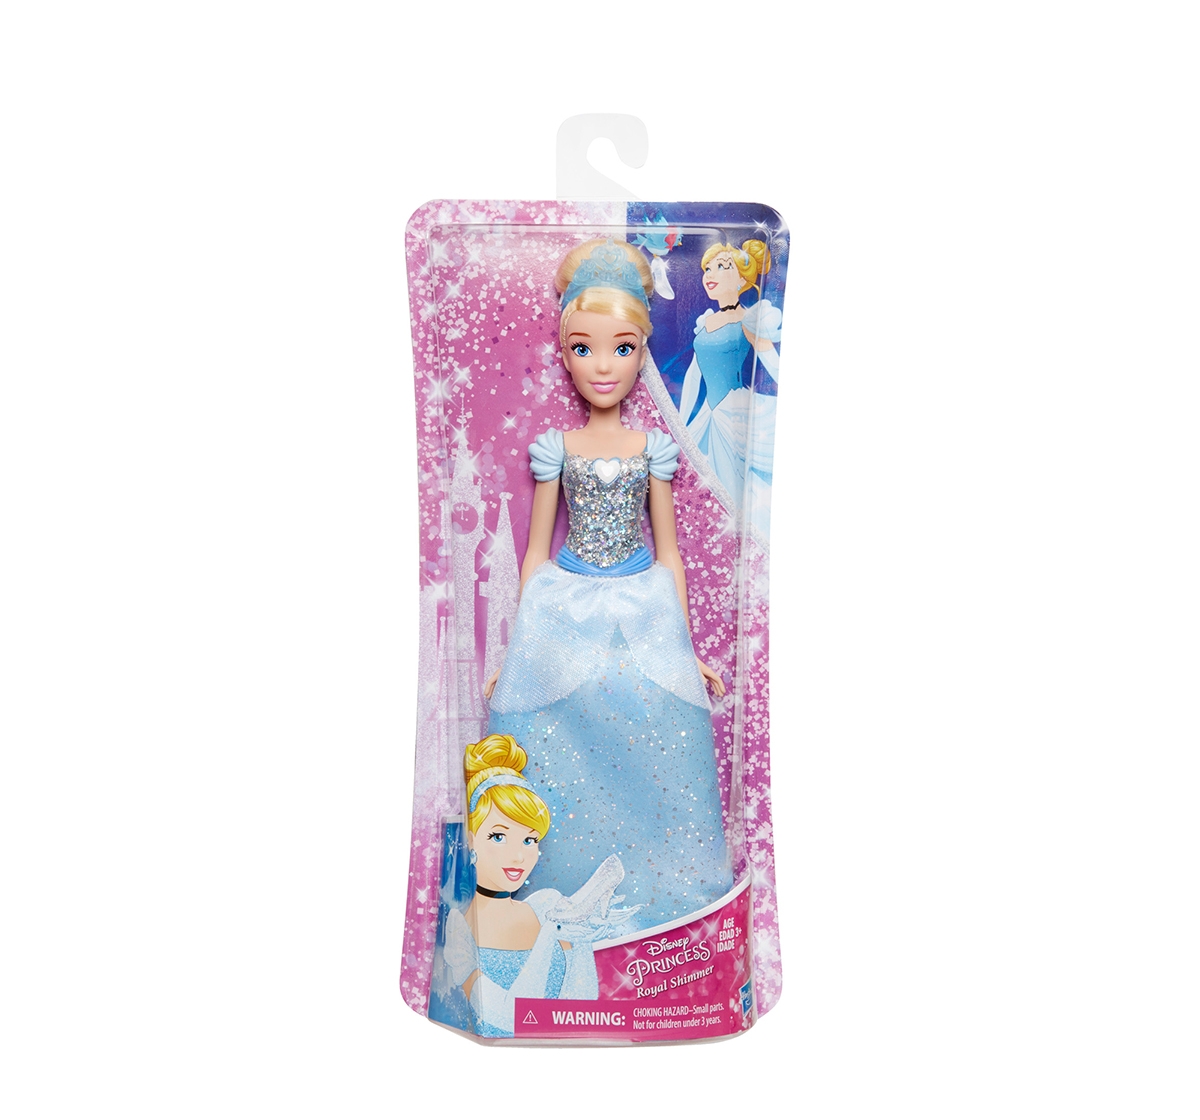 DISNEY | Disney Princess Royal Shimmer Cinderella Dolls & Accessories for Girls age 3Y+ 0